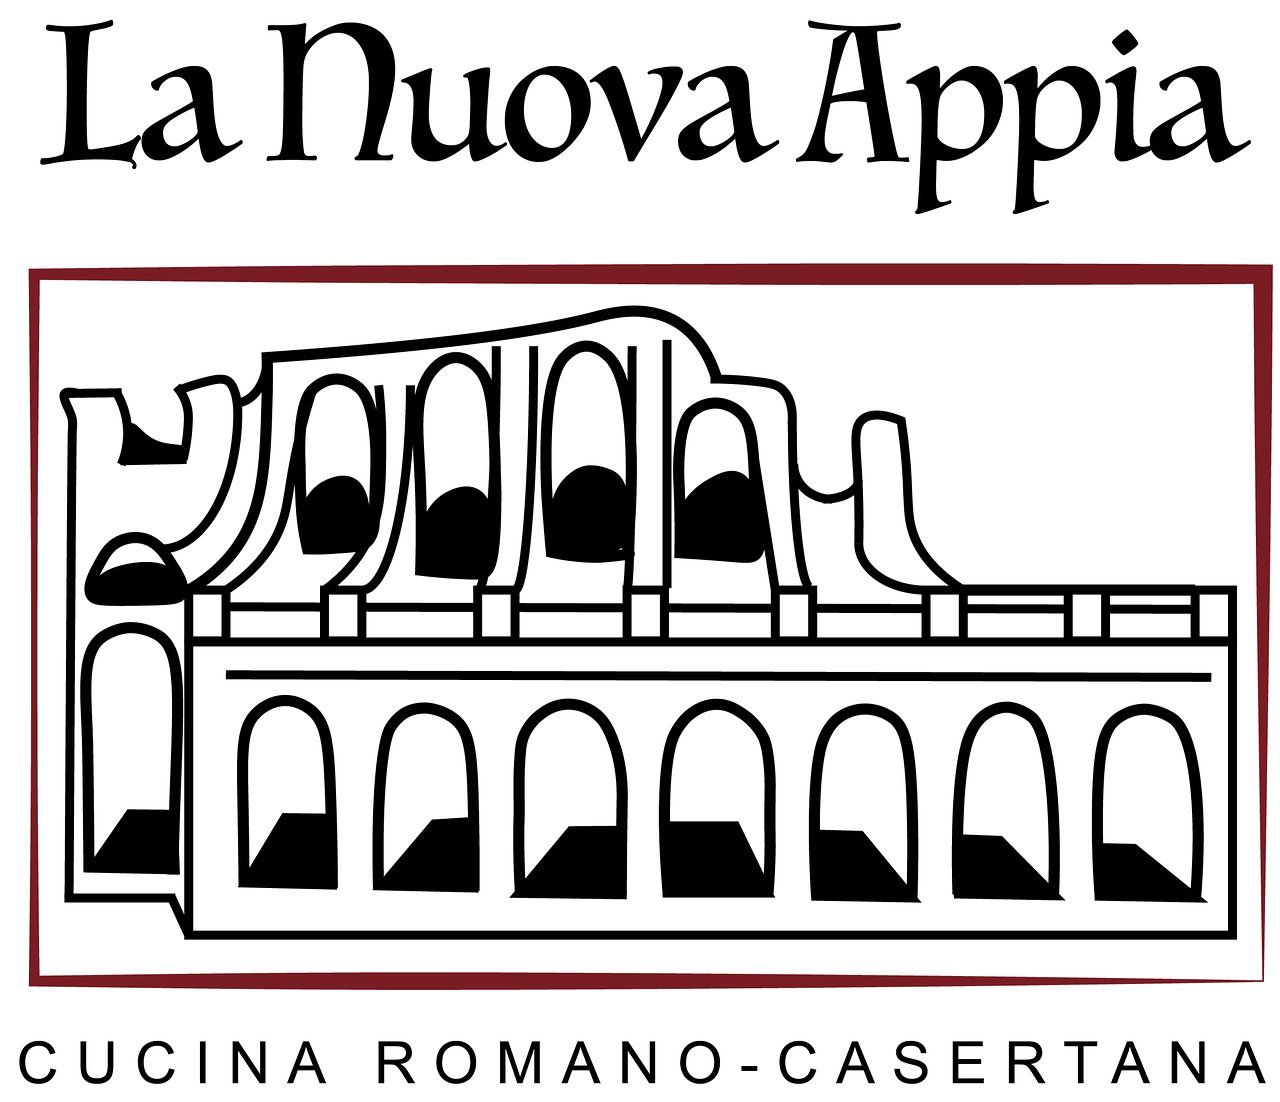 La Nuova Appia - Cucina Romano-casertana, Monza